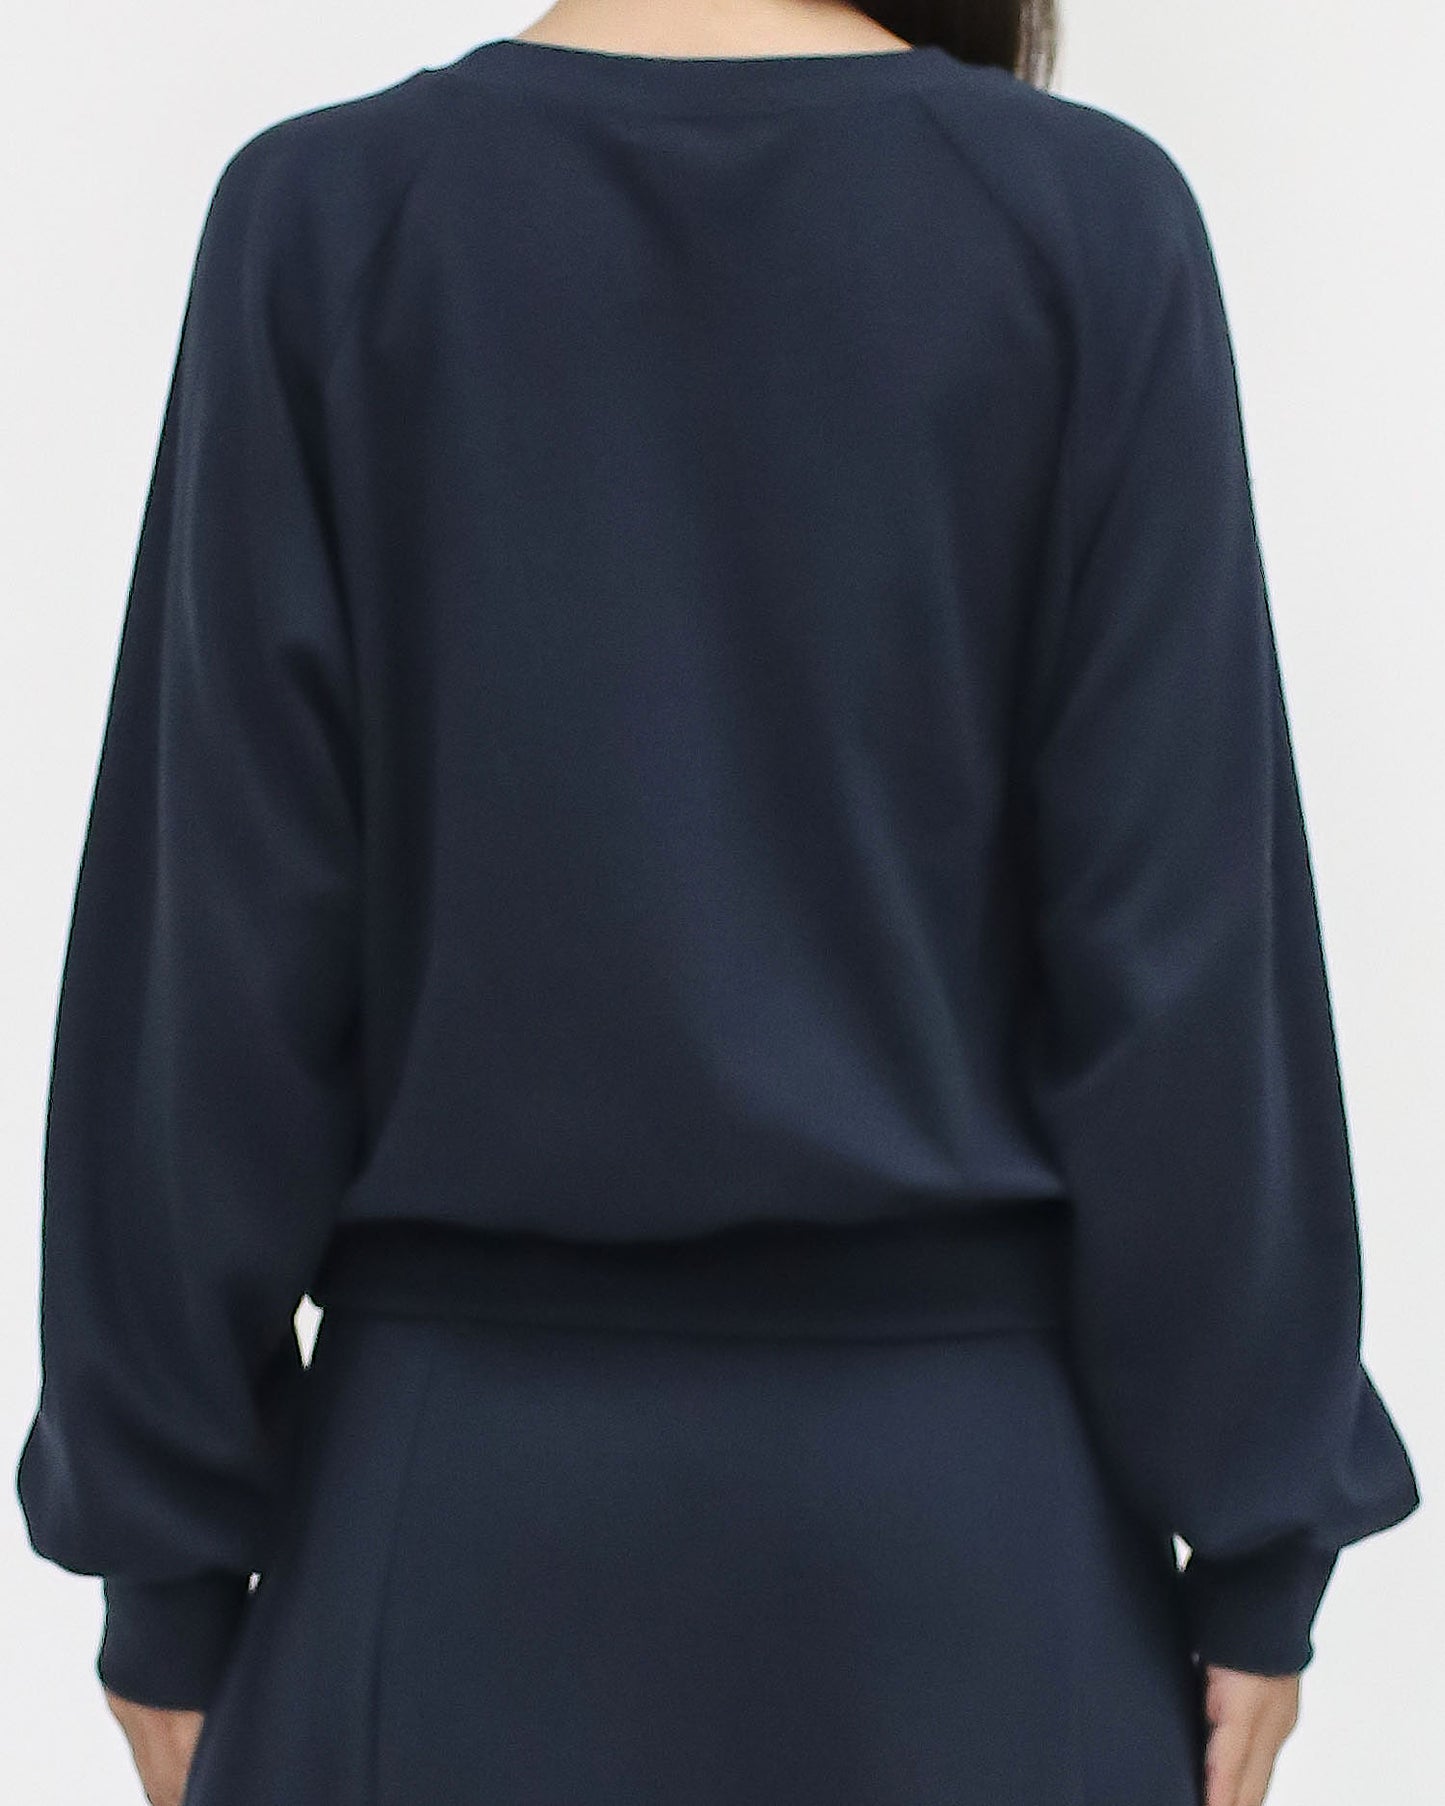 navy printed sweatshirt & skirt set *pre-order*